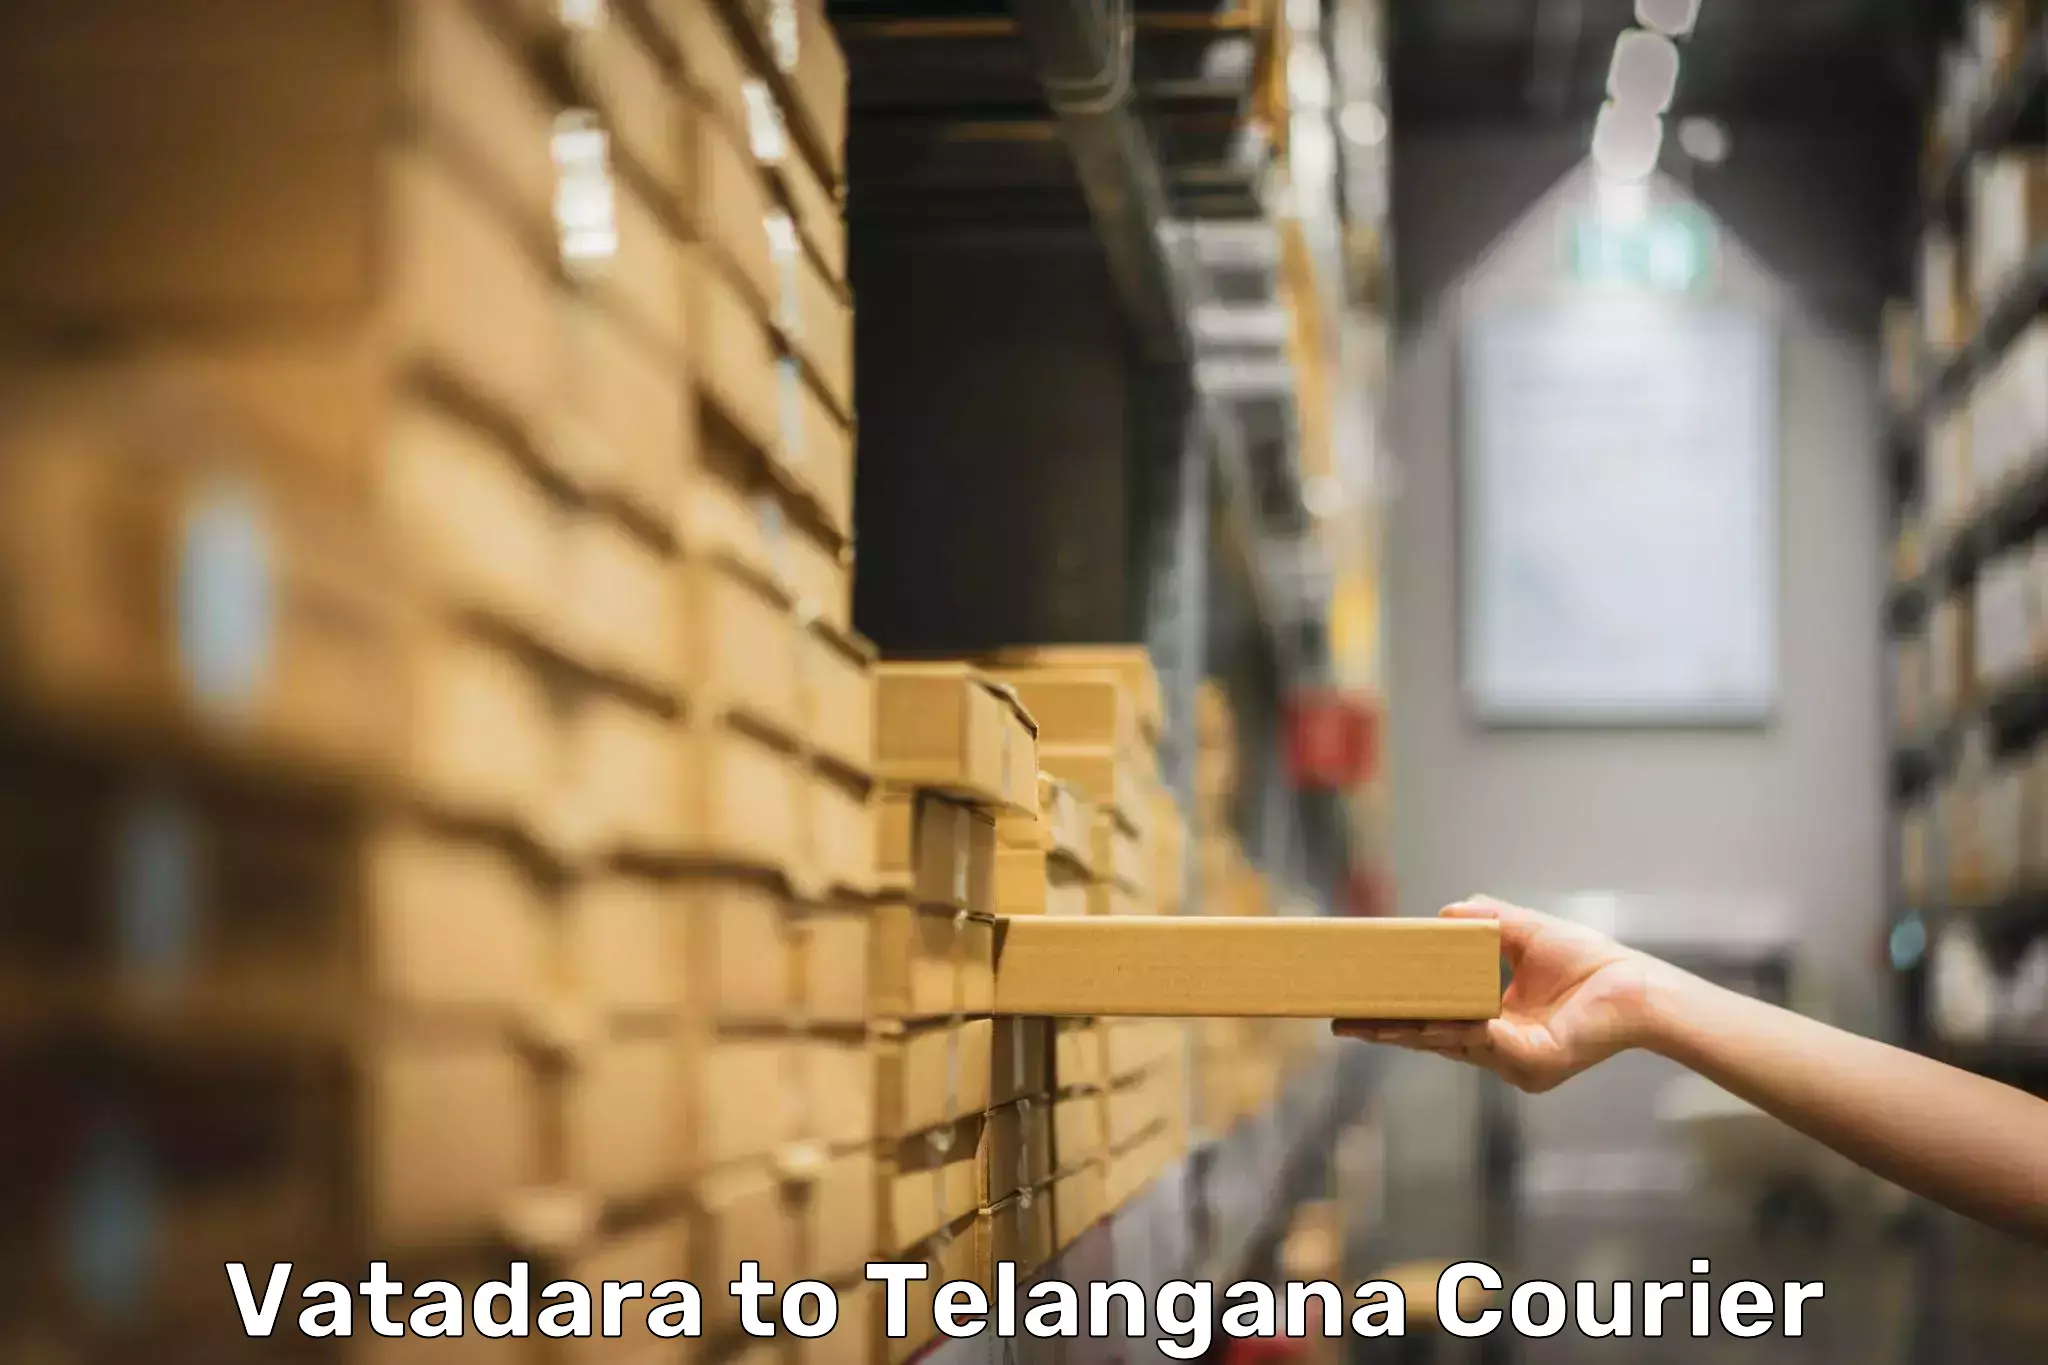 Door-to-door baggage service Vatadara to Telangana